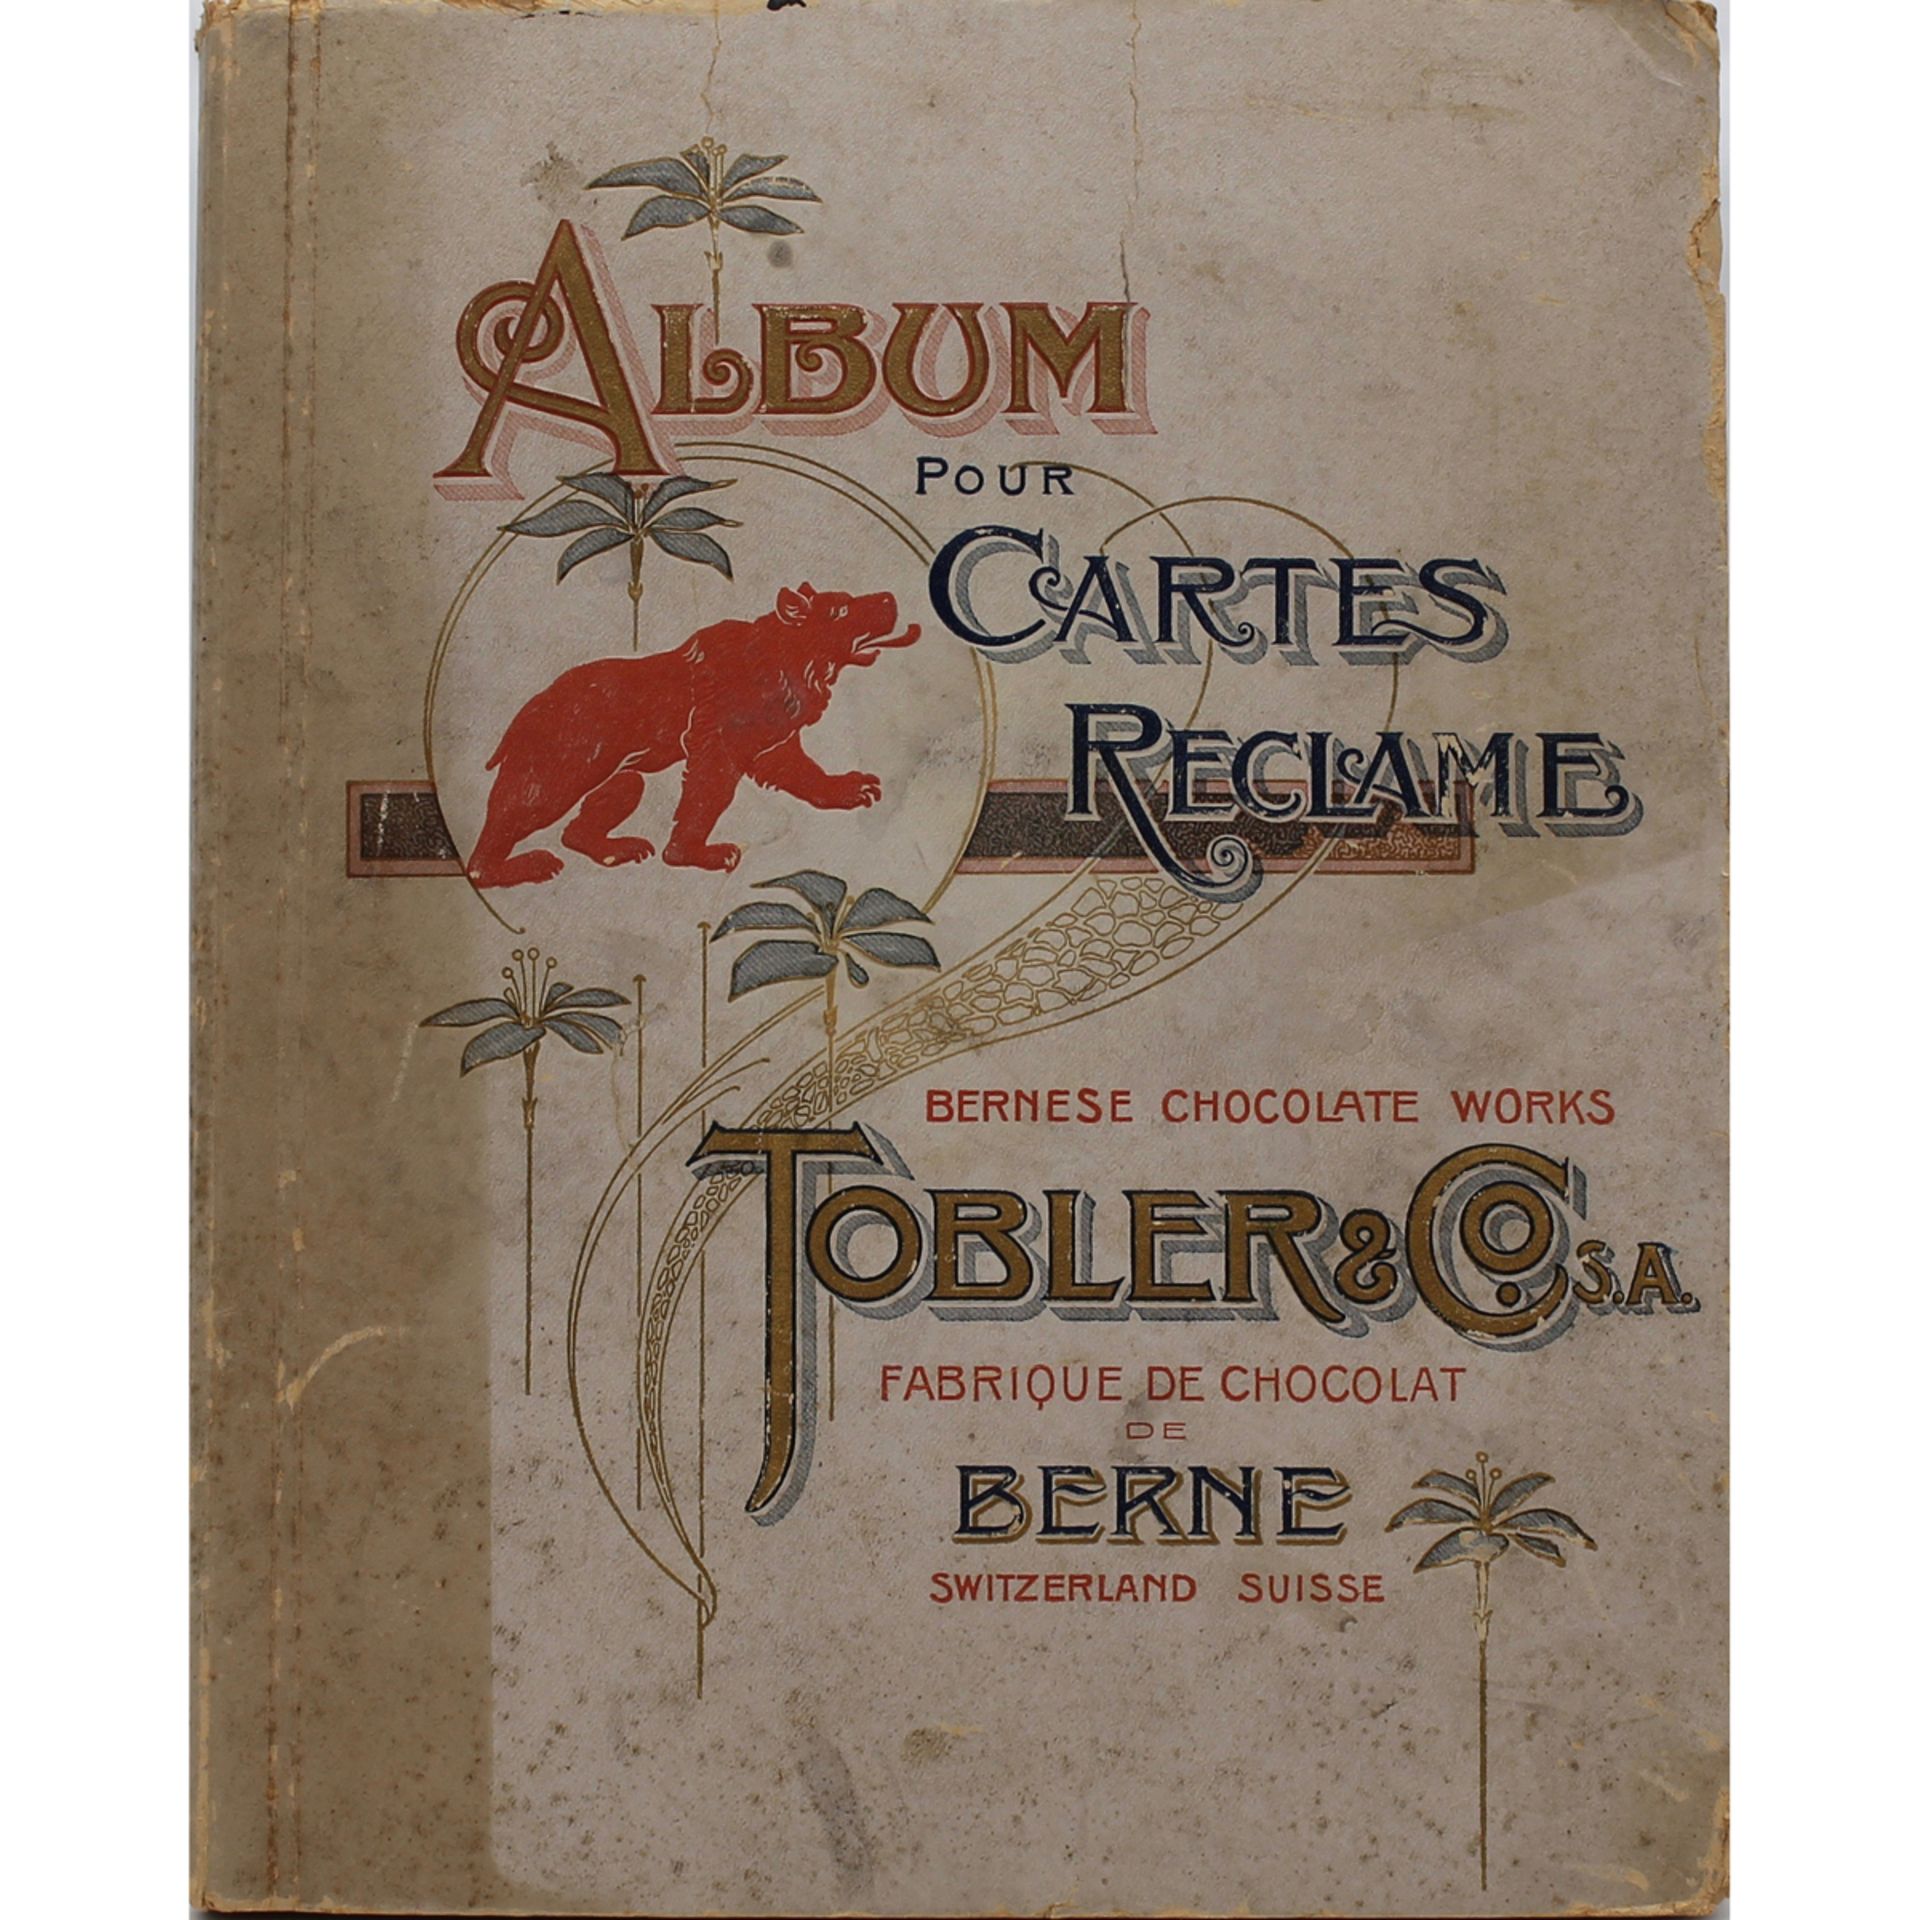 ALBUM POUR CARTES RECLAME "Tobler & Co."